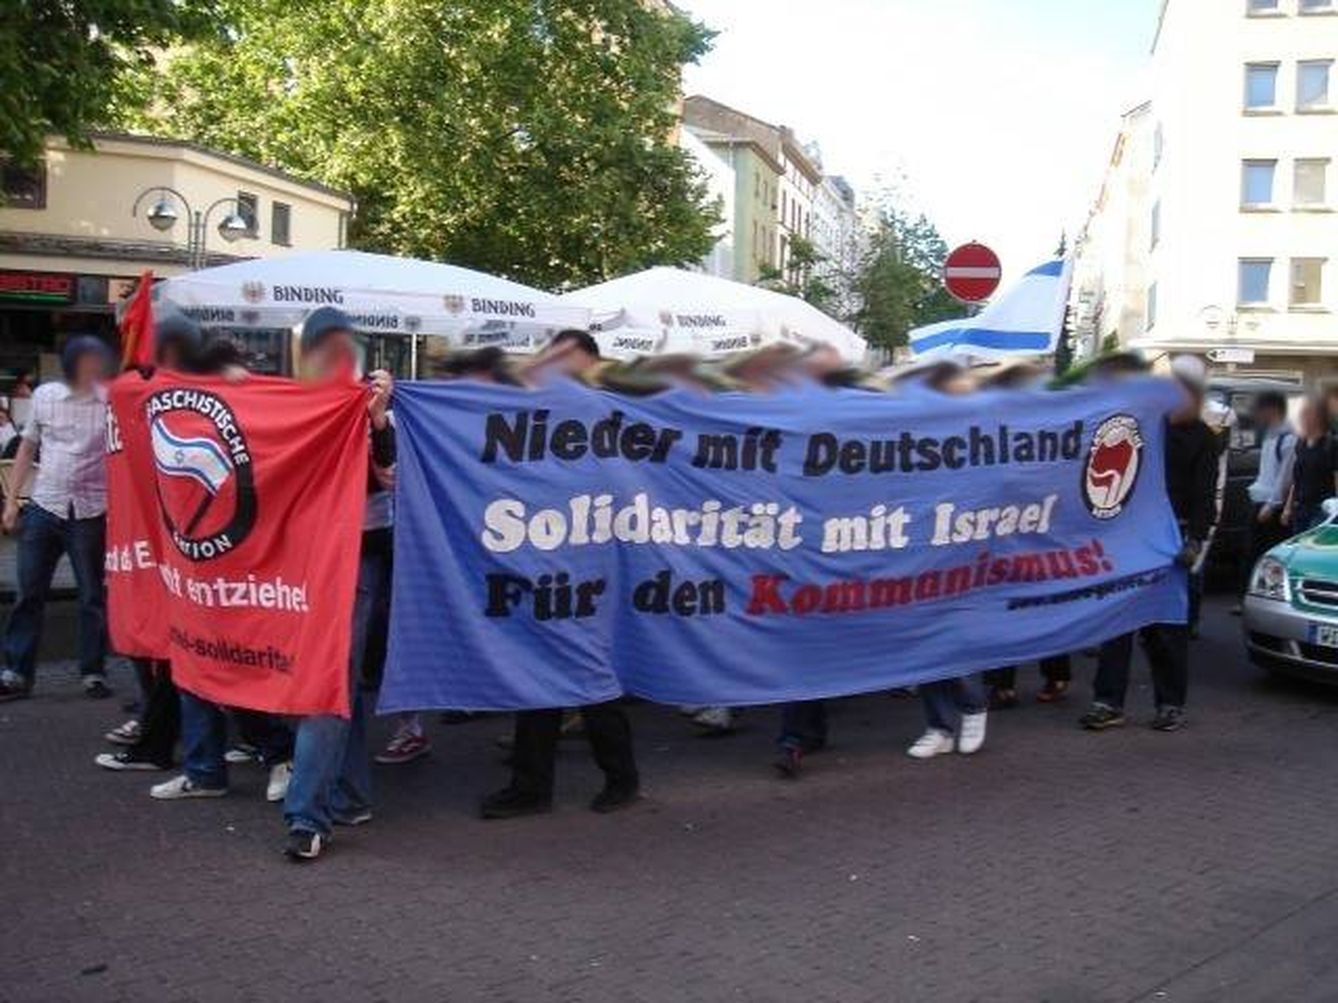 Manifestación del movimiento antialemán en solidaridad con Israel (Fuente: Wikimedia Commons)